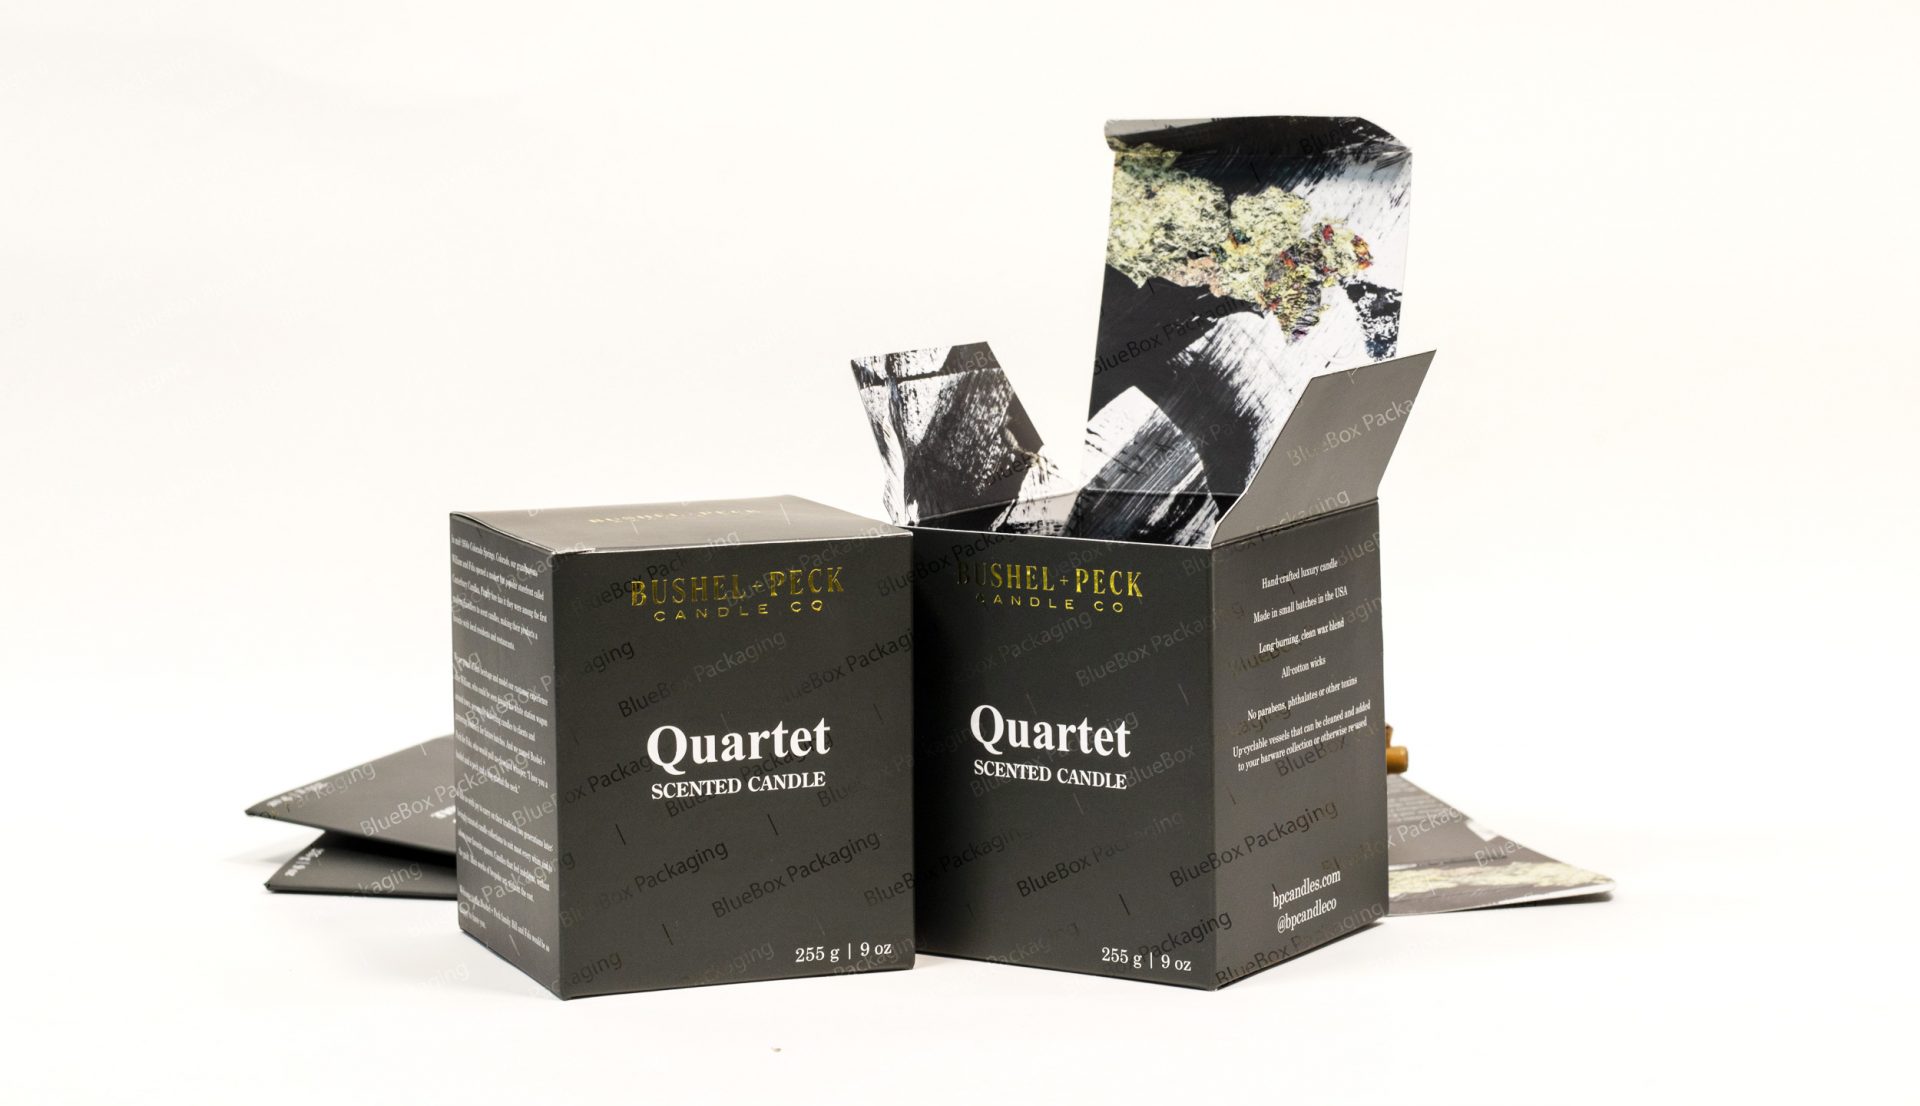 Bushel-Peck-Quartet-candle-box-72dde3d3